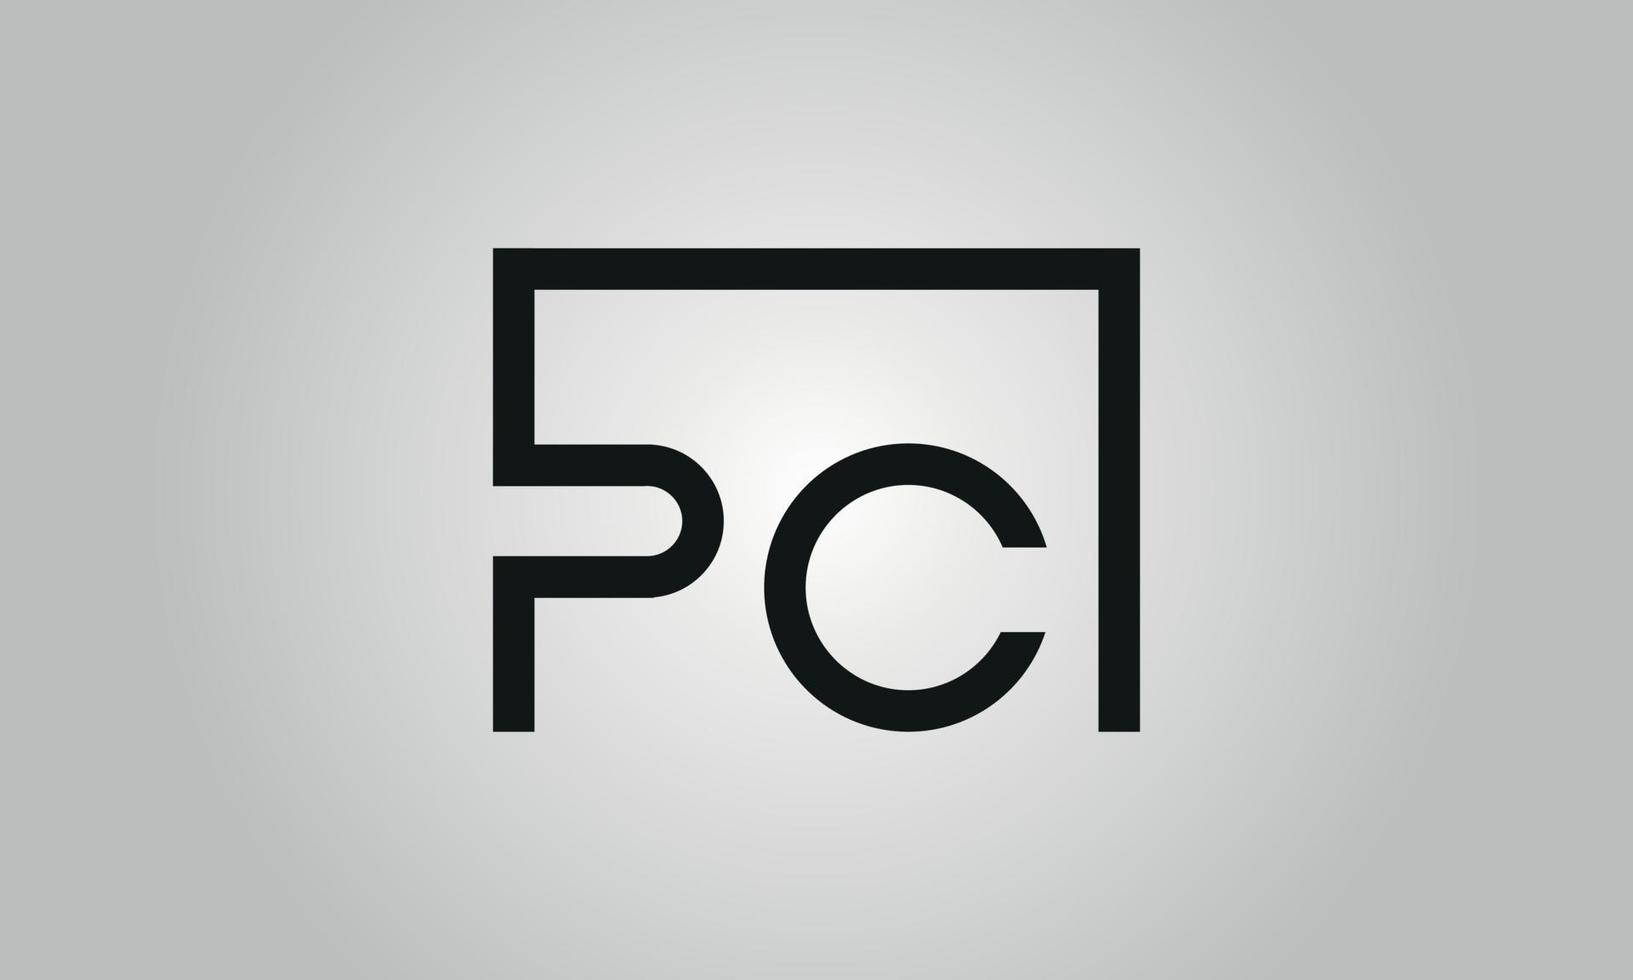 création de logo lettre pc. logo pc avec forme carrée dans le modèle vectoriel gratuit de couleurs noires.